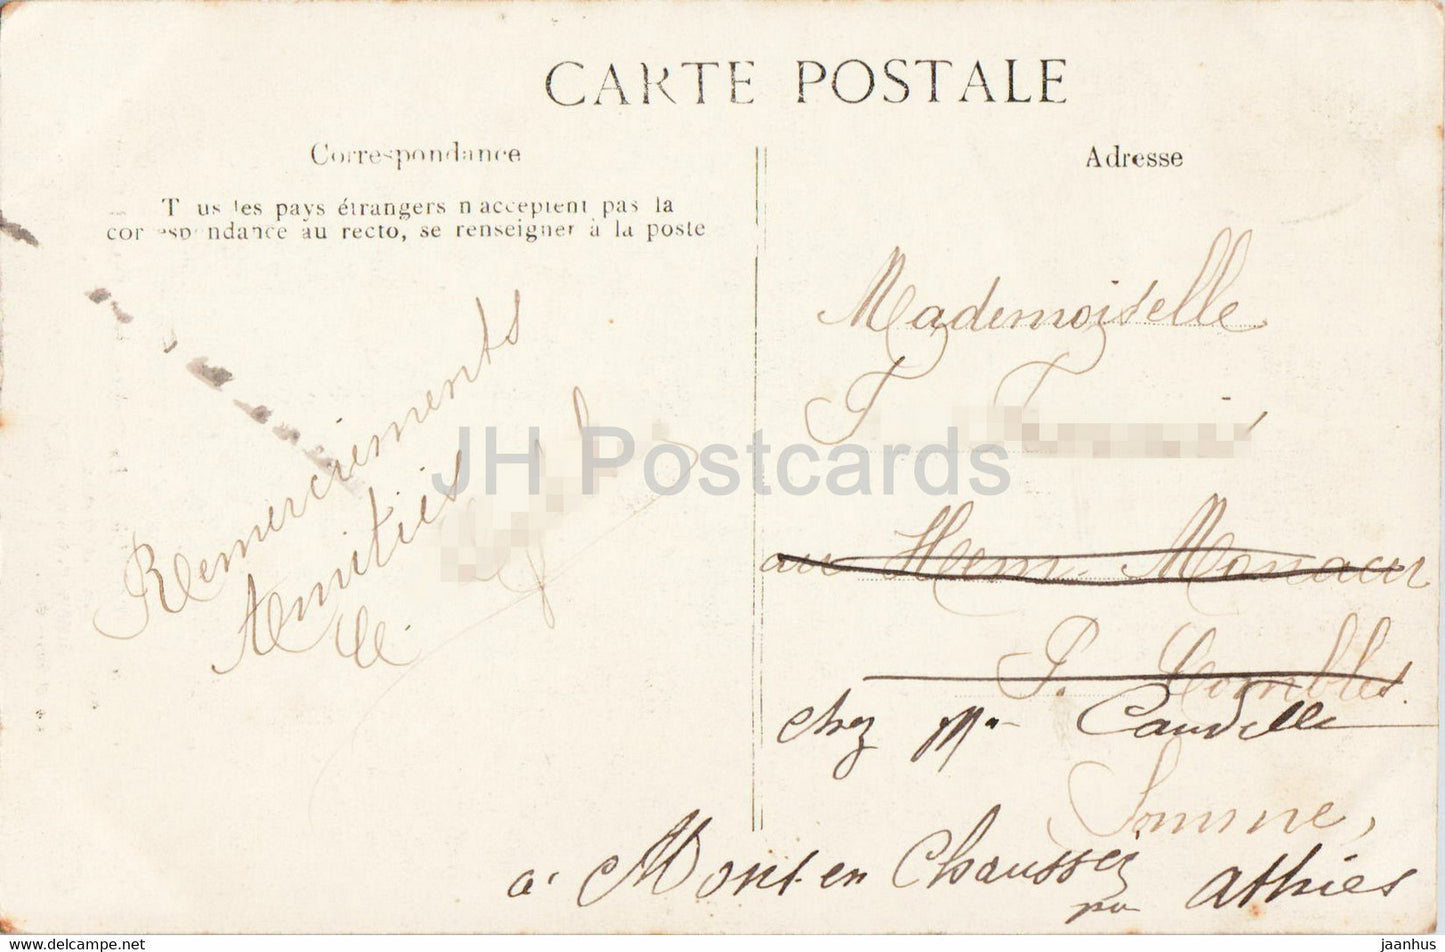 Reims - La Cathédrale - Portail Nord - cathédrale - 11 - carte postale ancienne - 1912 - France - occasion